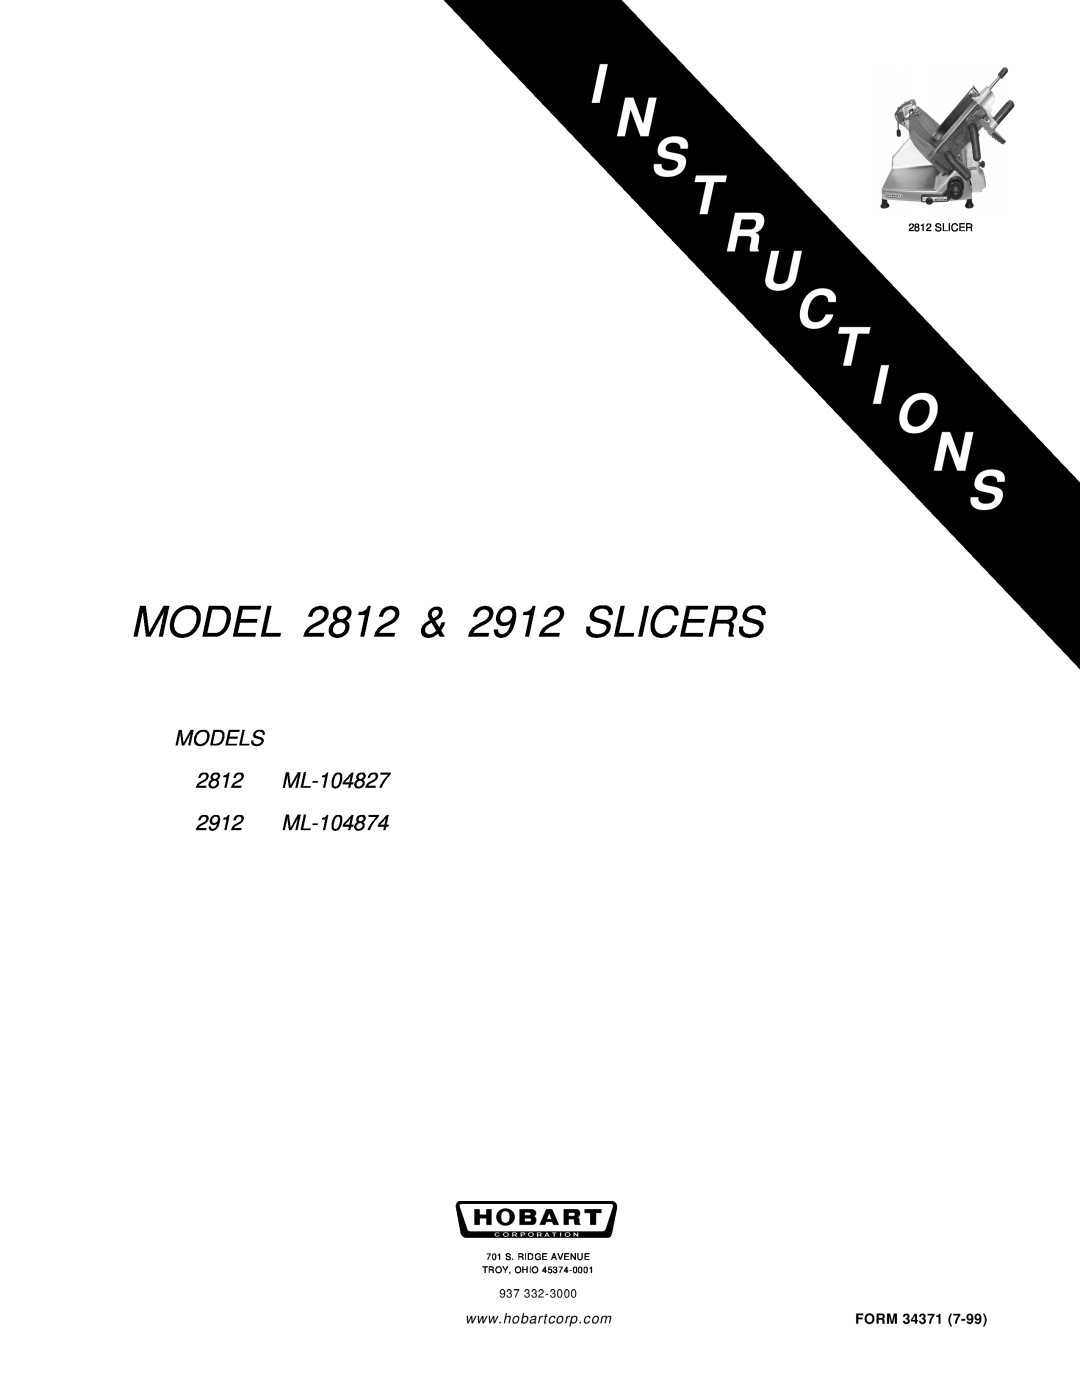 Hobart manual Uc T I Ons, MODEL 2812 & 2912 SLICERS, MODELS 2812 ML-104827 2912 ML-104874, Form, TR 2812 SLICER 